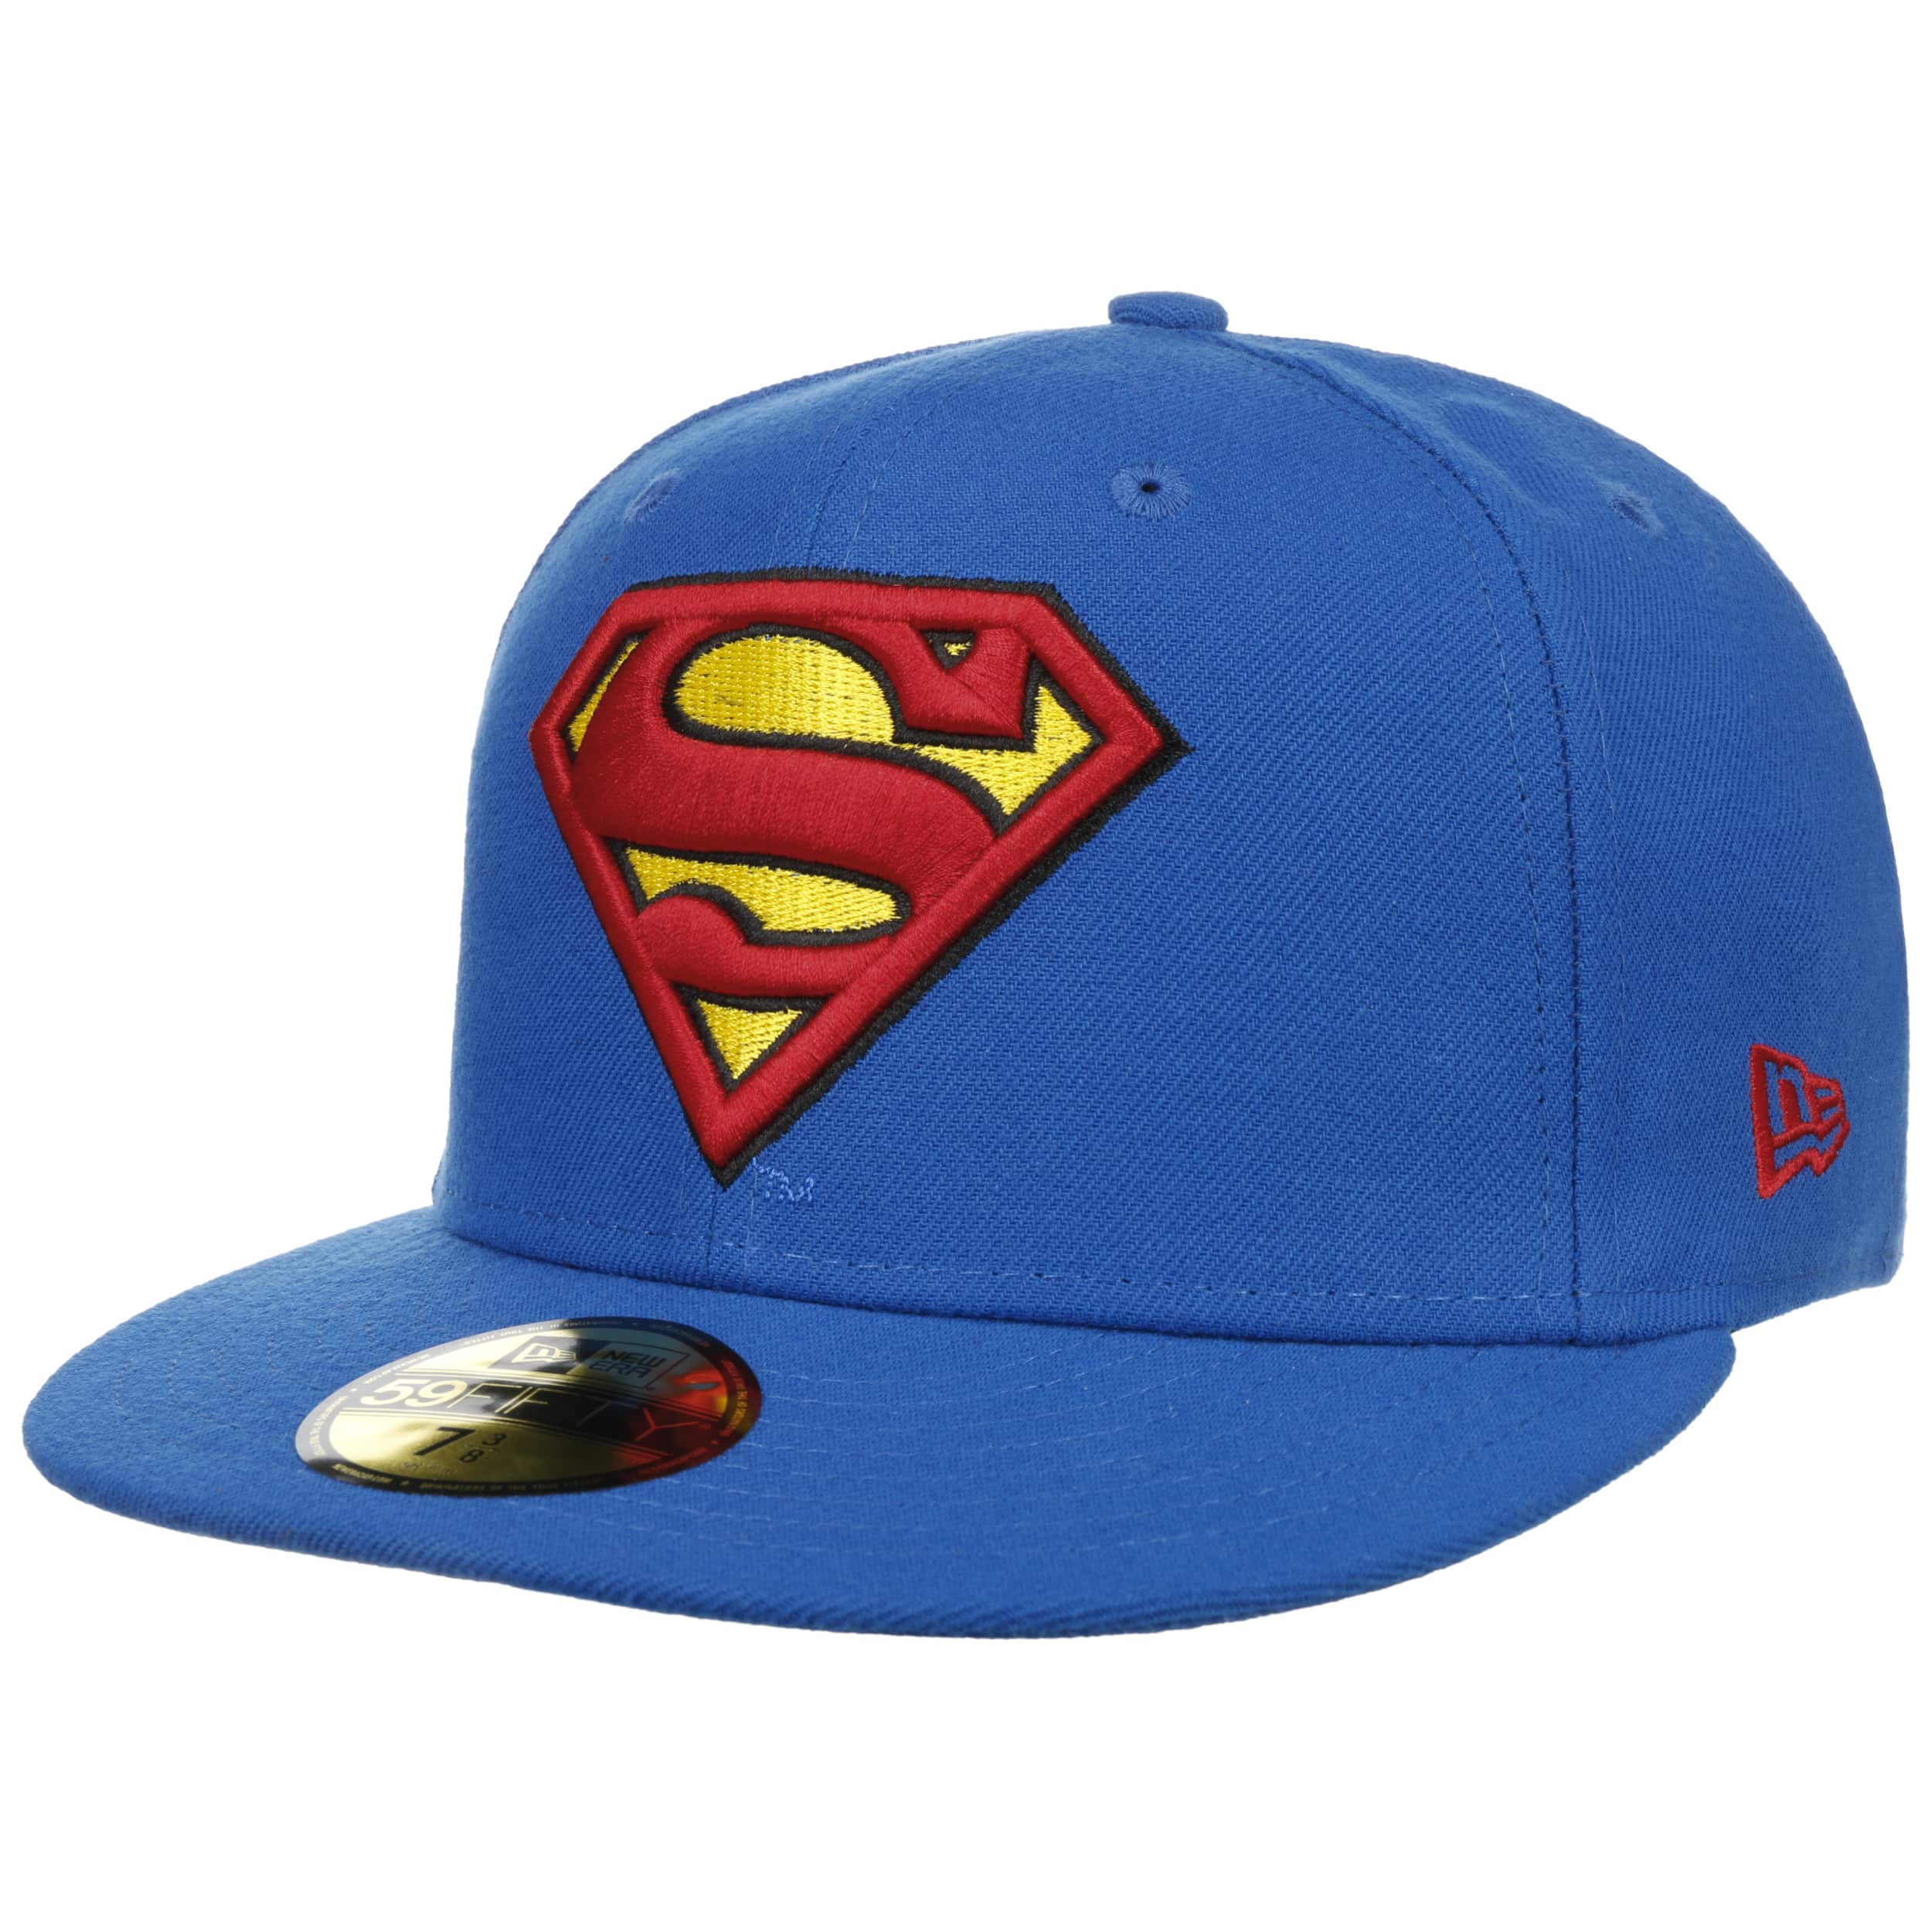 Hat 30. Cap одежда. Костюм cap. Cap одежда для детей. Кепка Супермен.